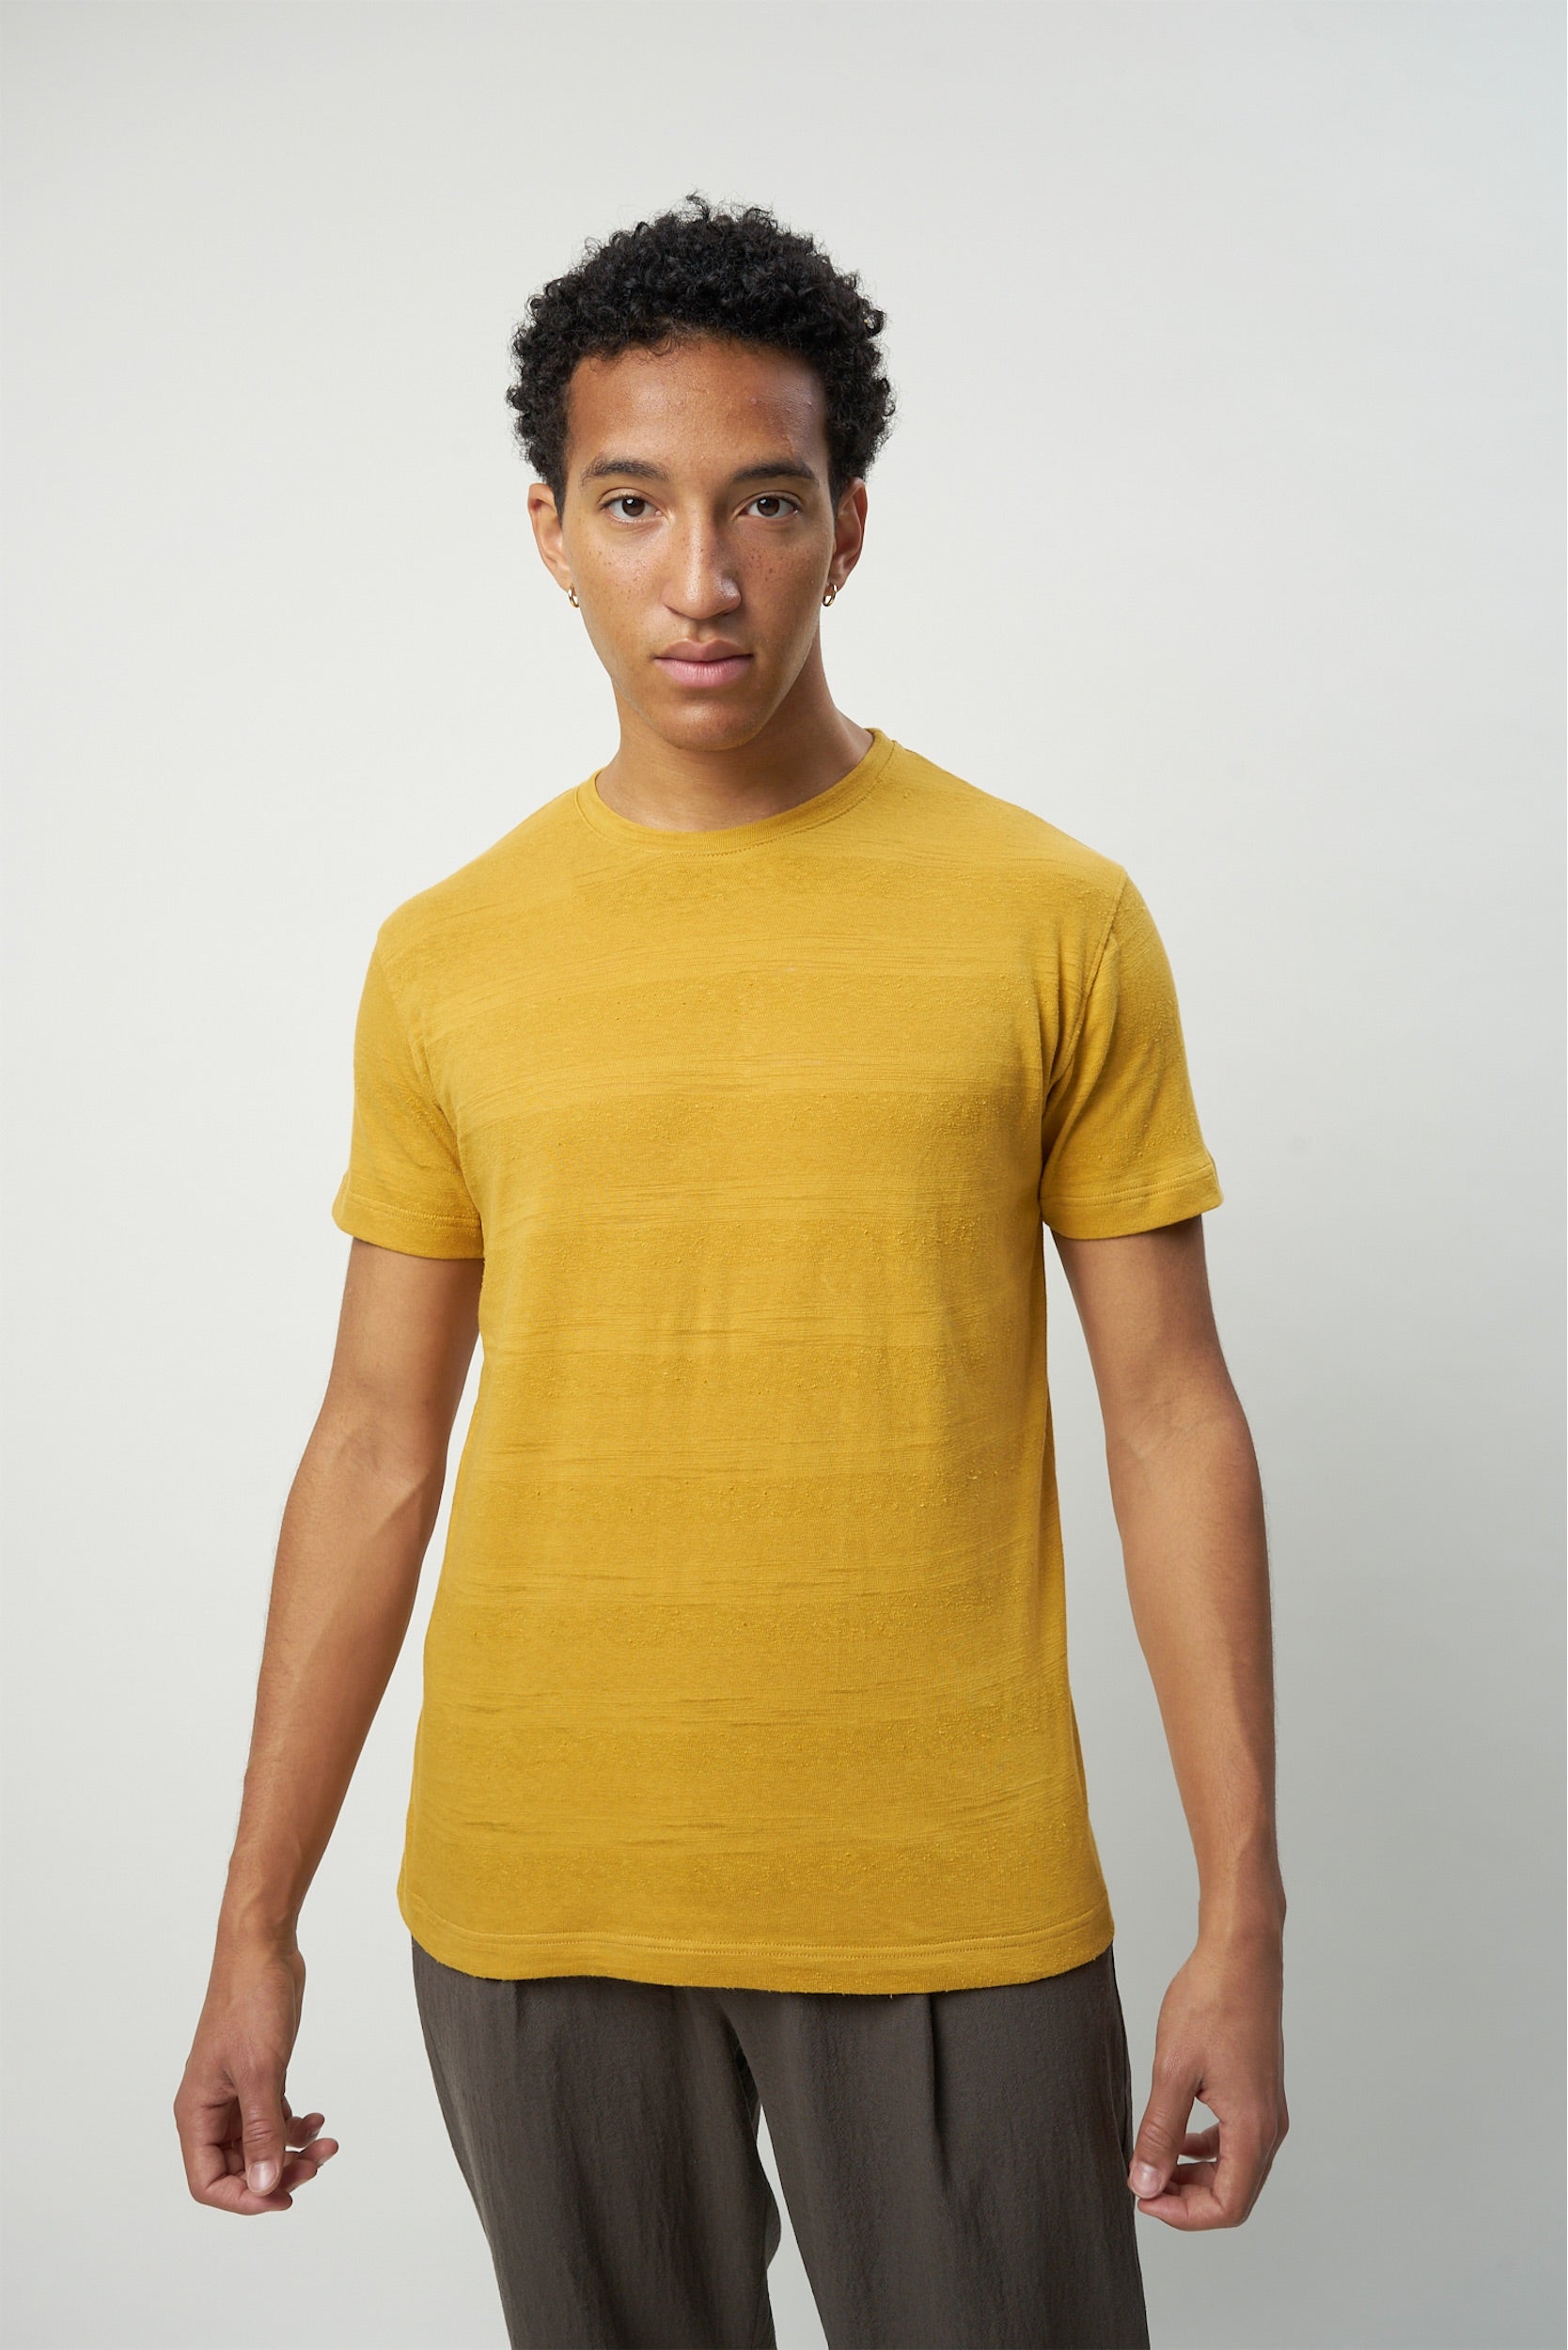 Men's Sweats & T-Shirts - Delikatessen